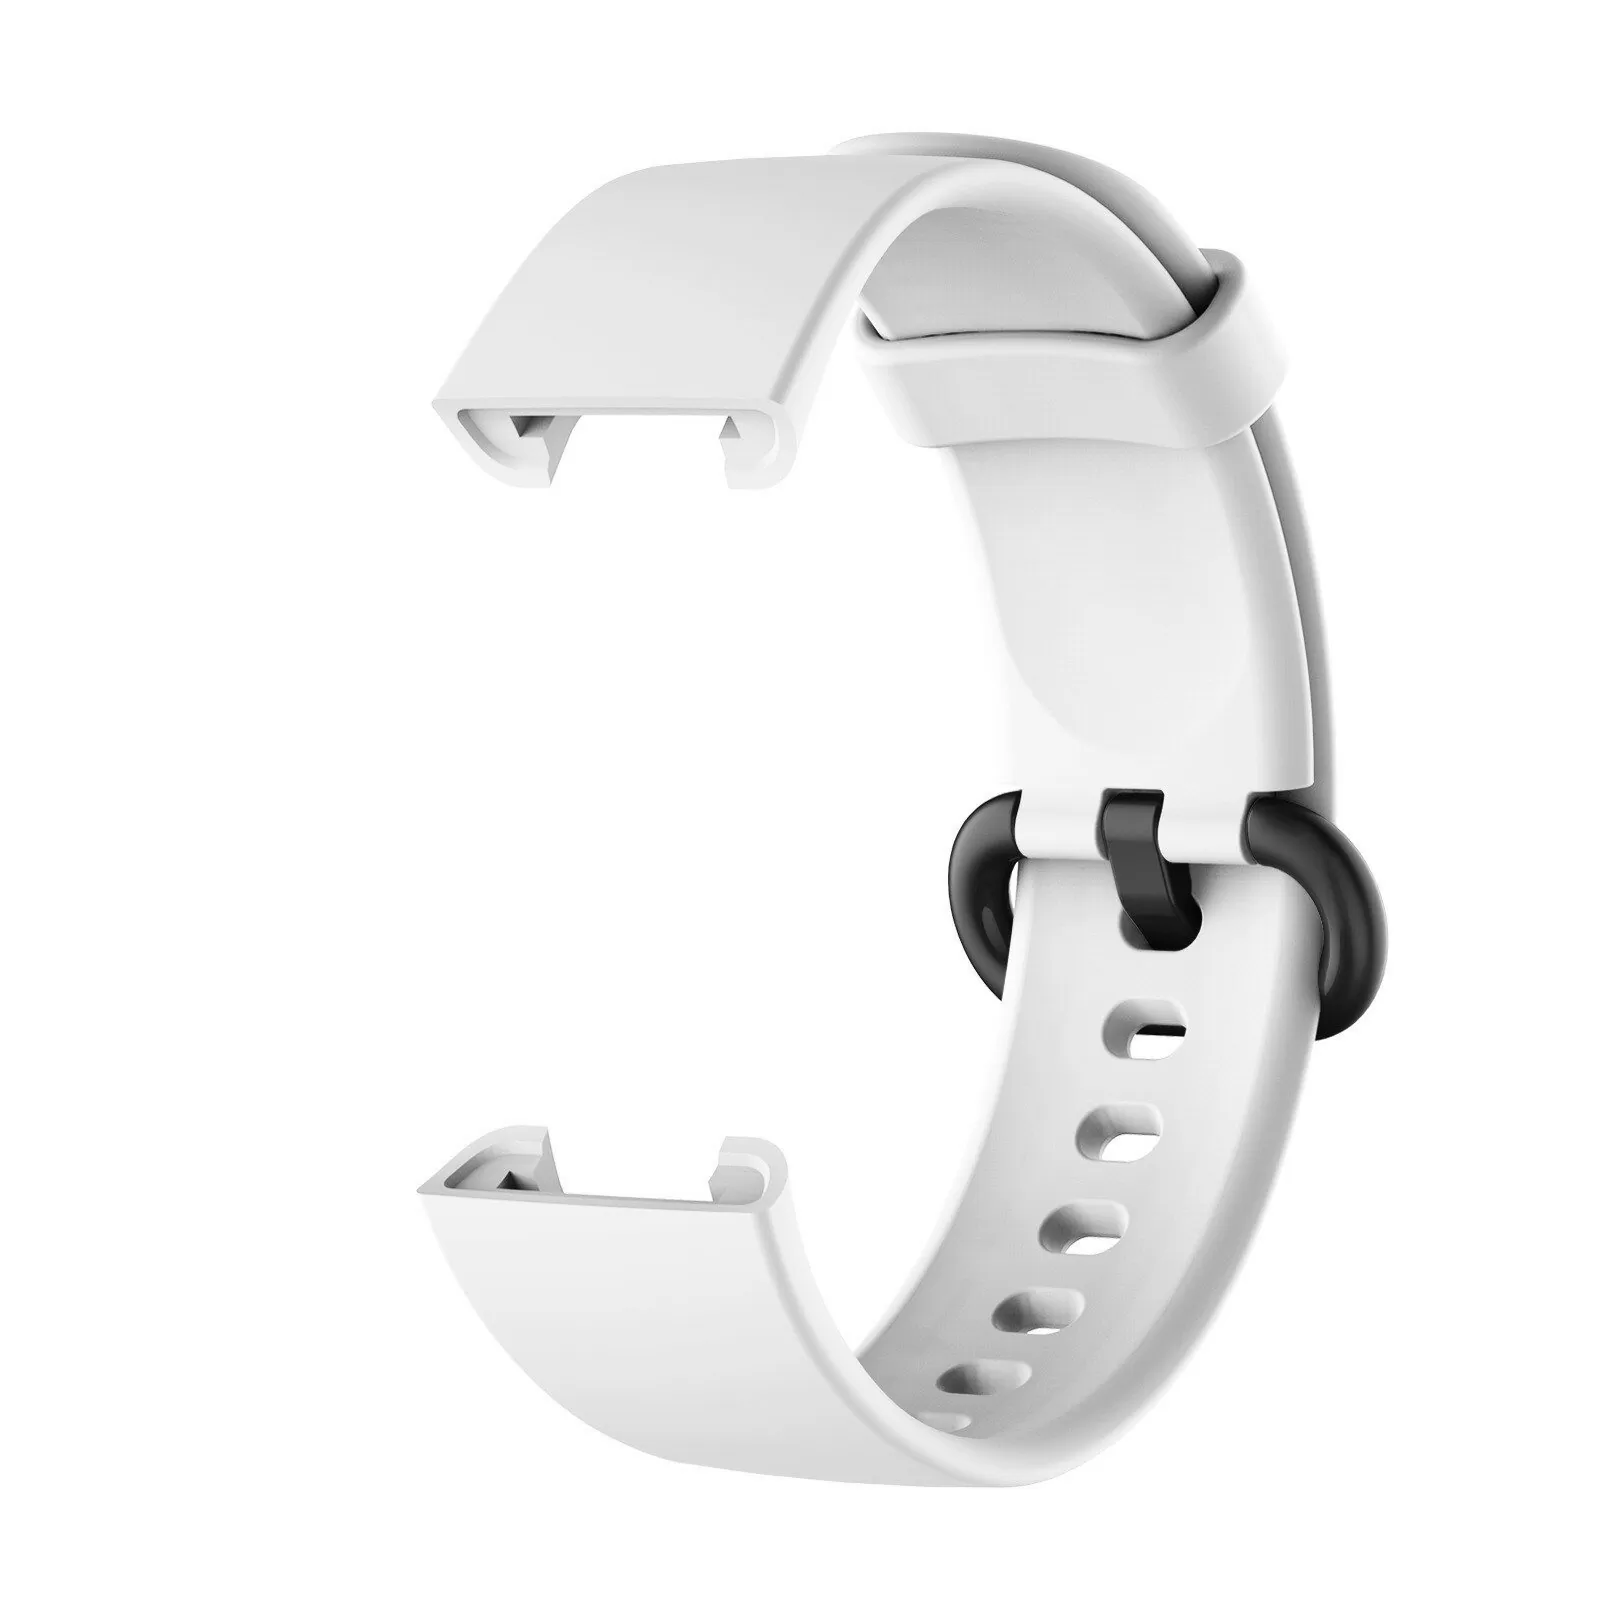  Para Redmi Watch 2 bandas, correas de silicona suave, pulsera  deportiva, transpirable y resistente al sudor, accesorios de repuesto para  Xiaomi Redmi Watch 2 Lite, regalo de Navidad ideal para mujeres